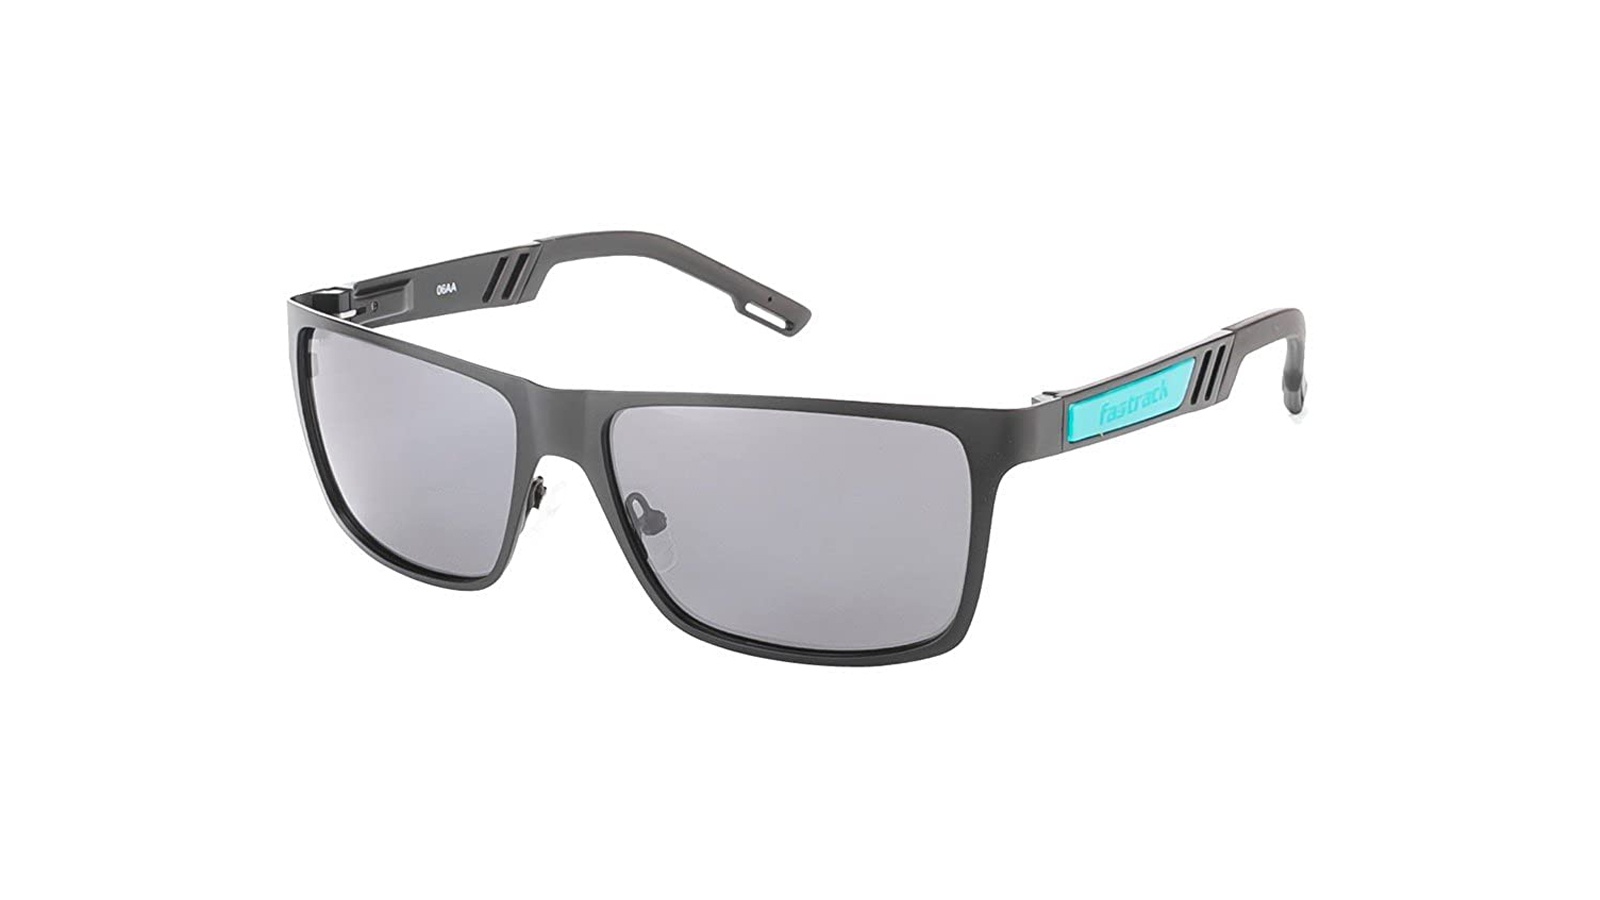 Wayfarer Rimmed Sunglasses Fastrack - P182BK2F at best price | Titan Eye+